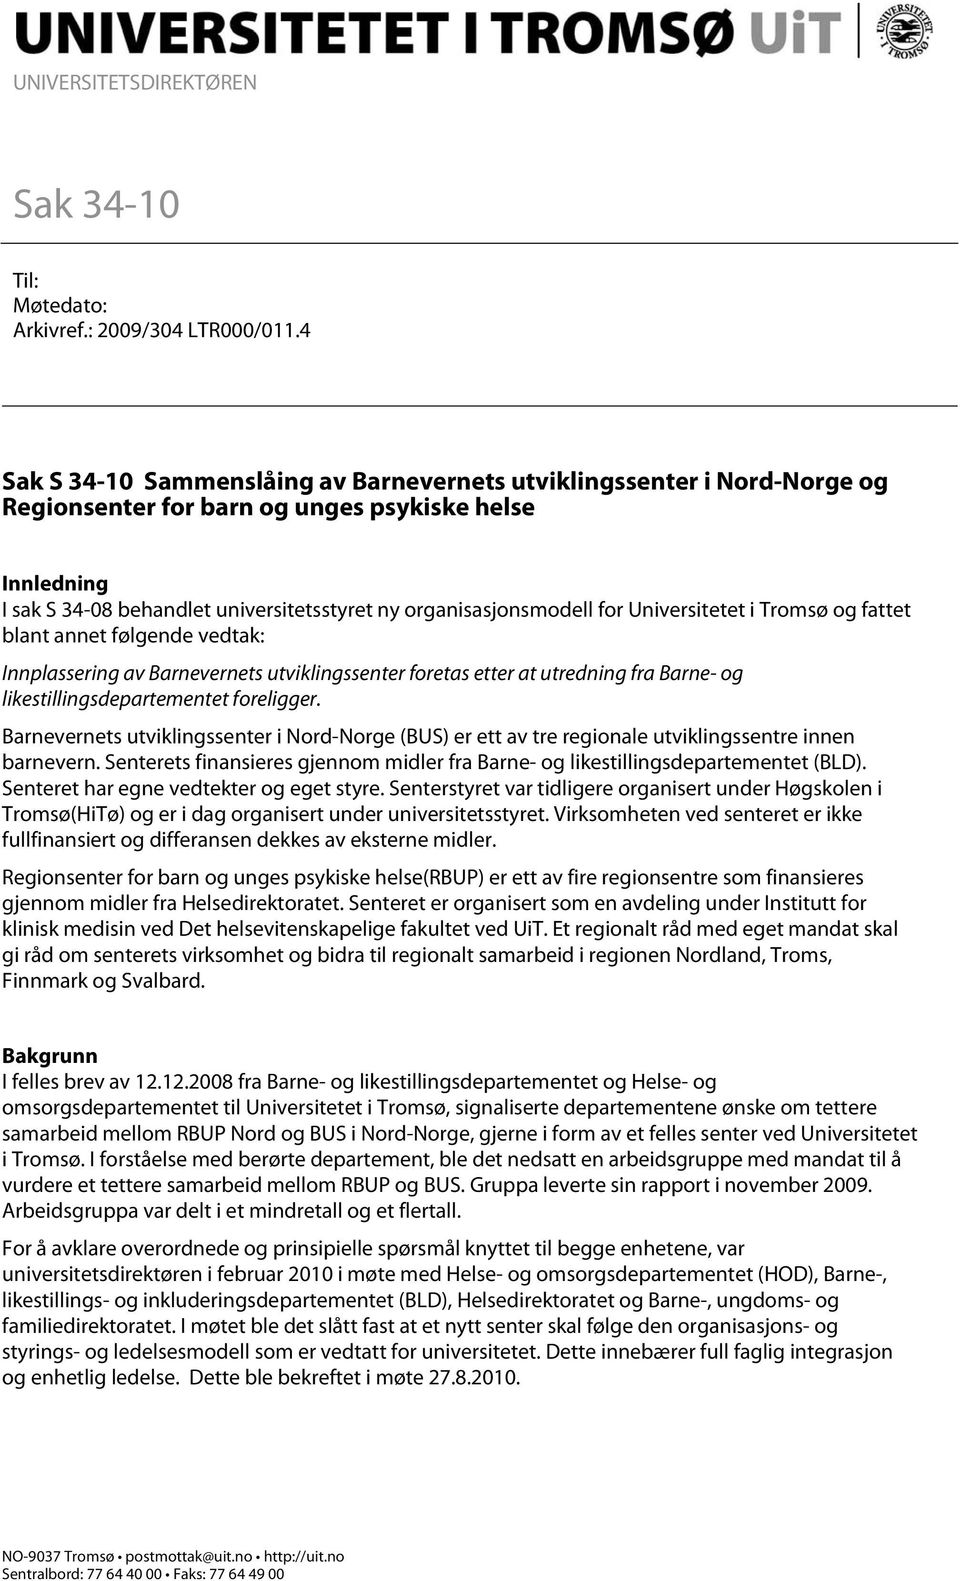 for Universitetet i Tromsø og fattet blant annet følgende vedtak: Innplassering av Barnevernets utviklingssenter foretas etter at utredning fra Barne- og likestillingsdepartementet foreligger.